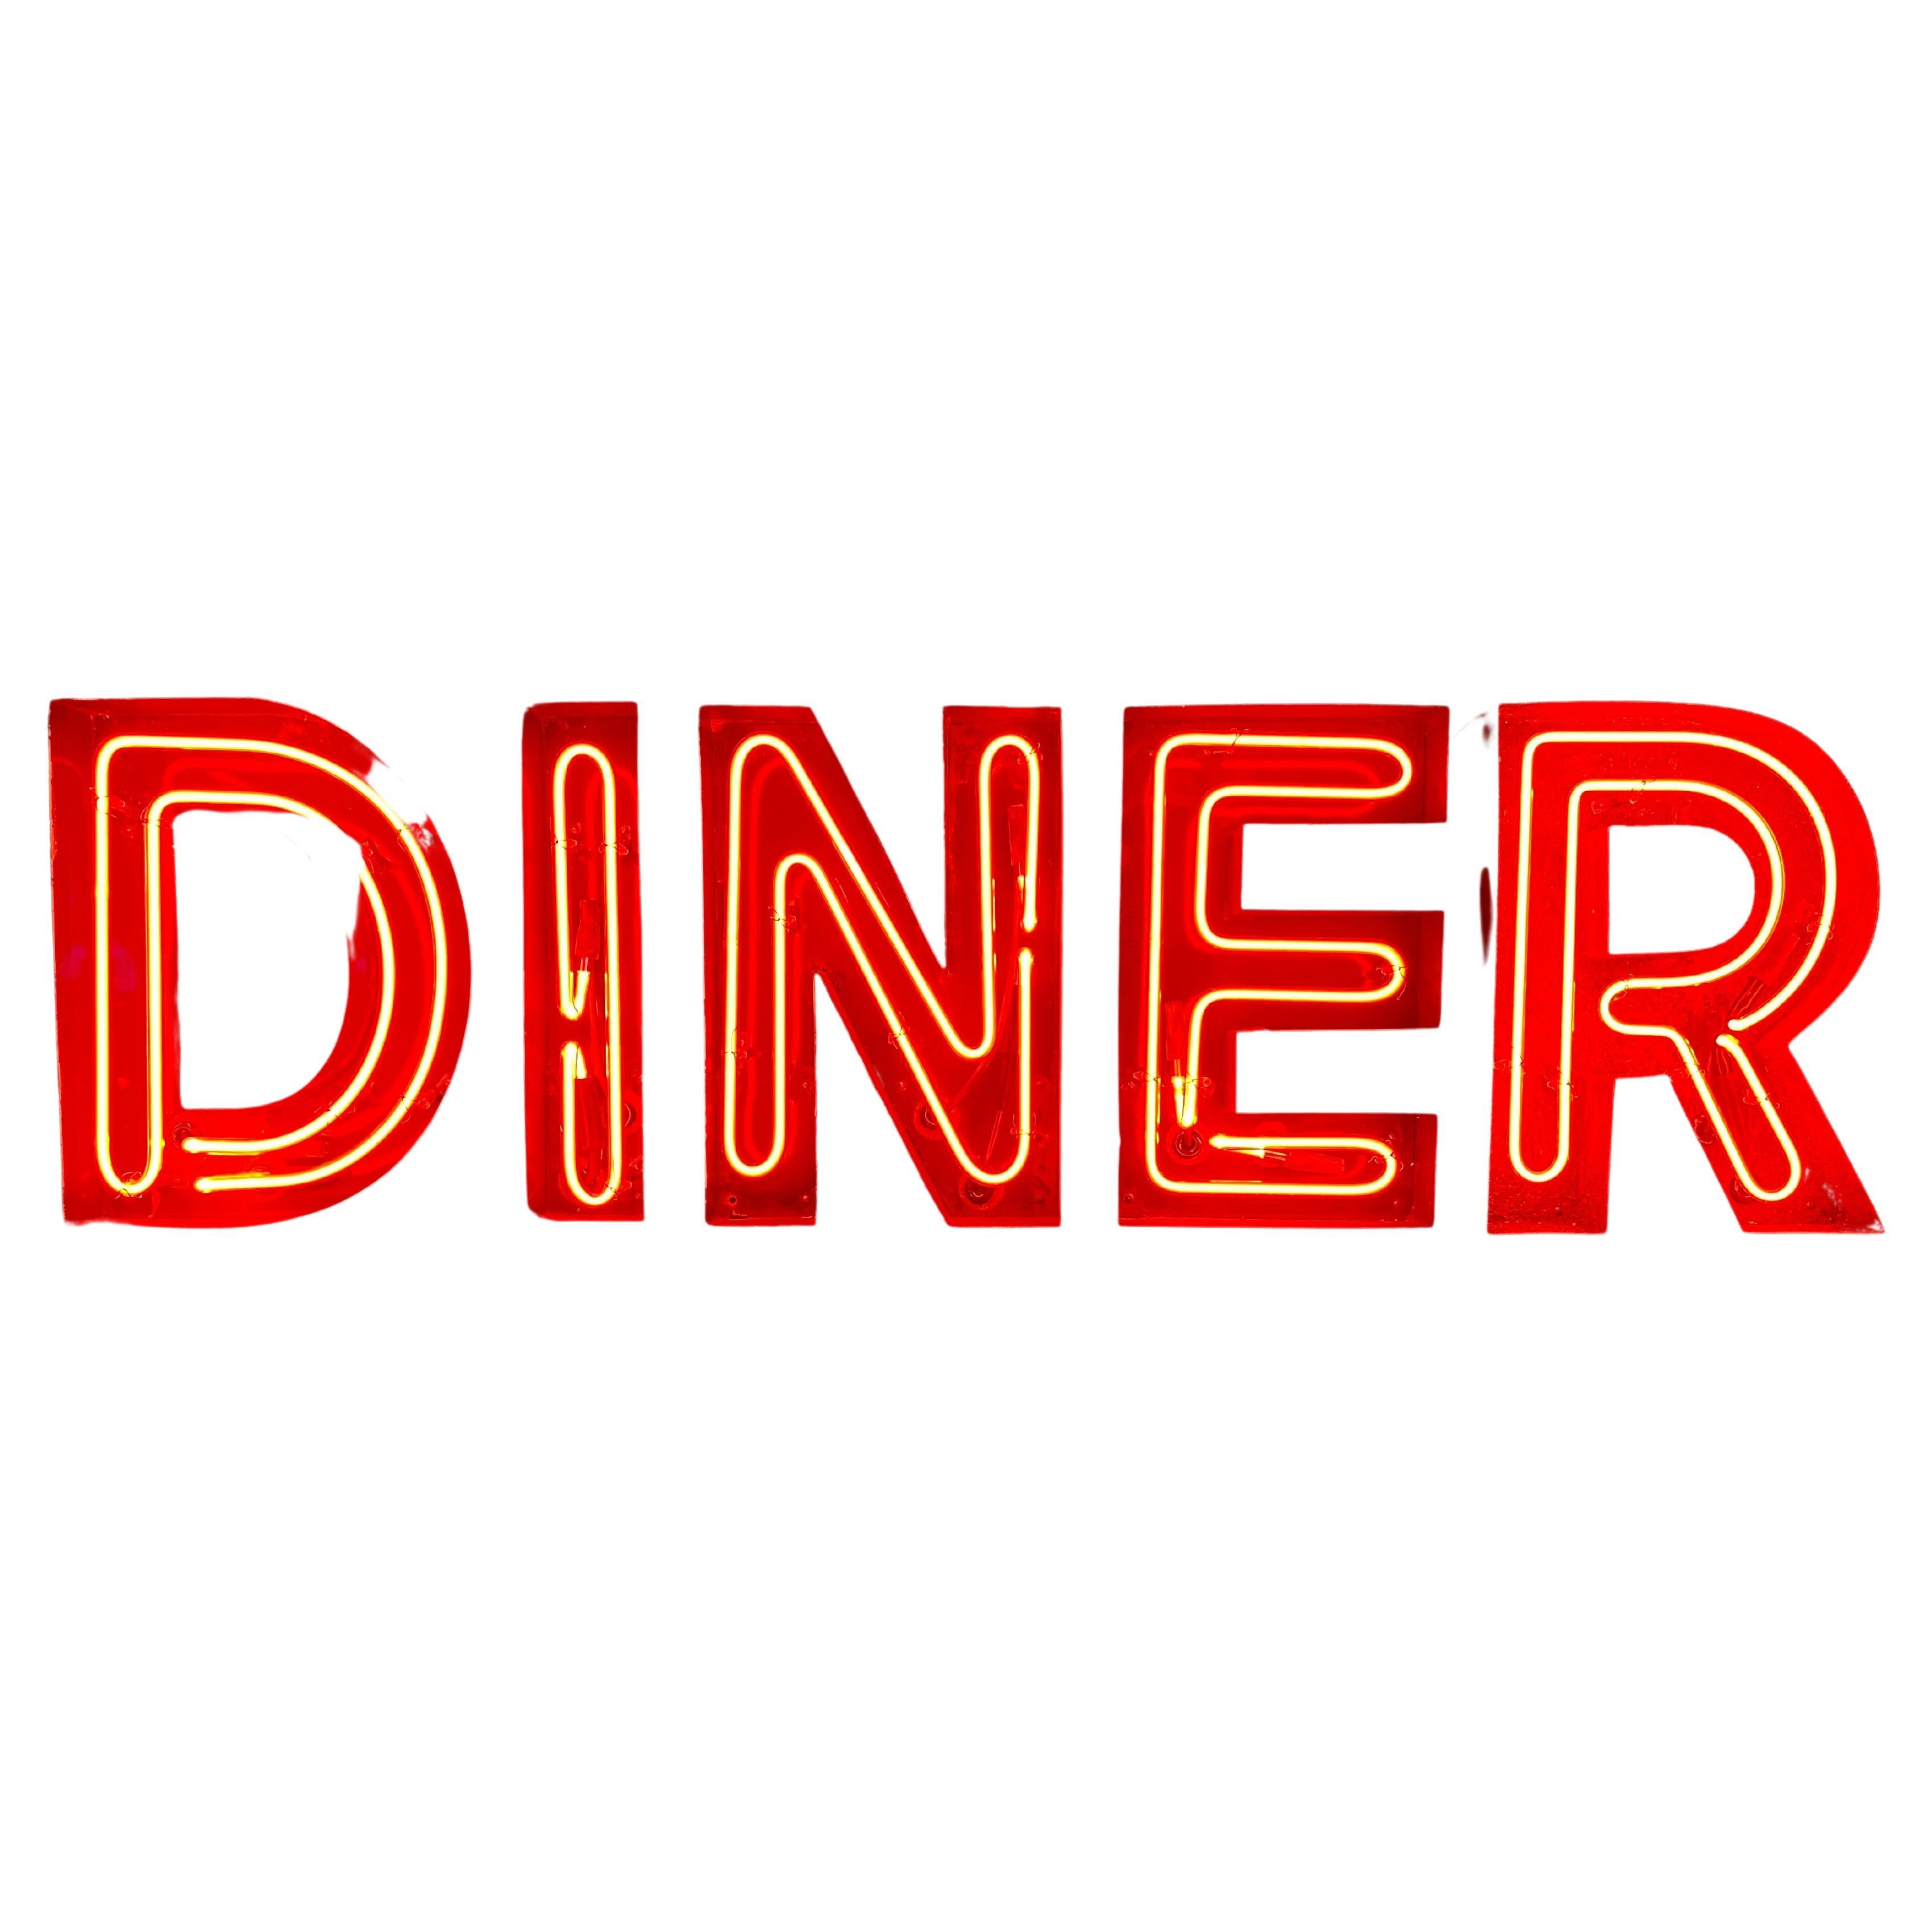 1950er Neonschild Diner